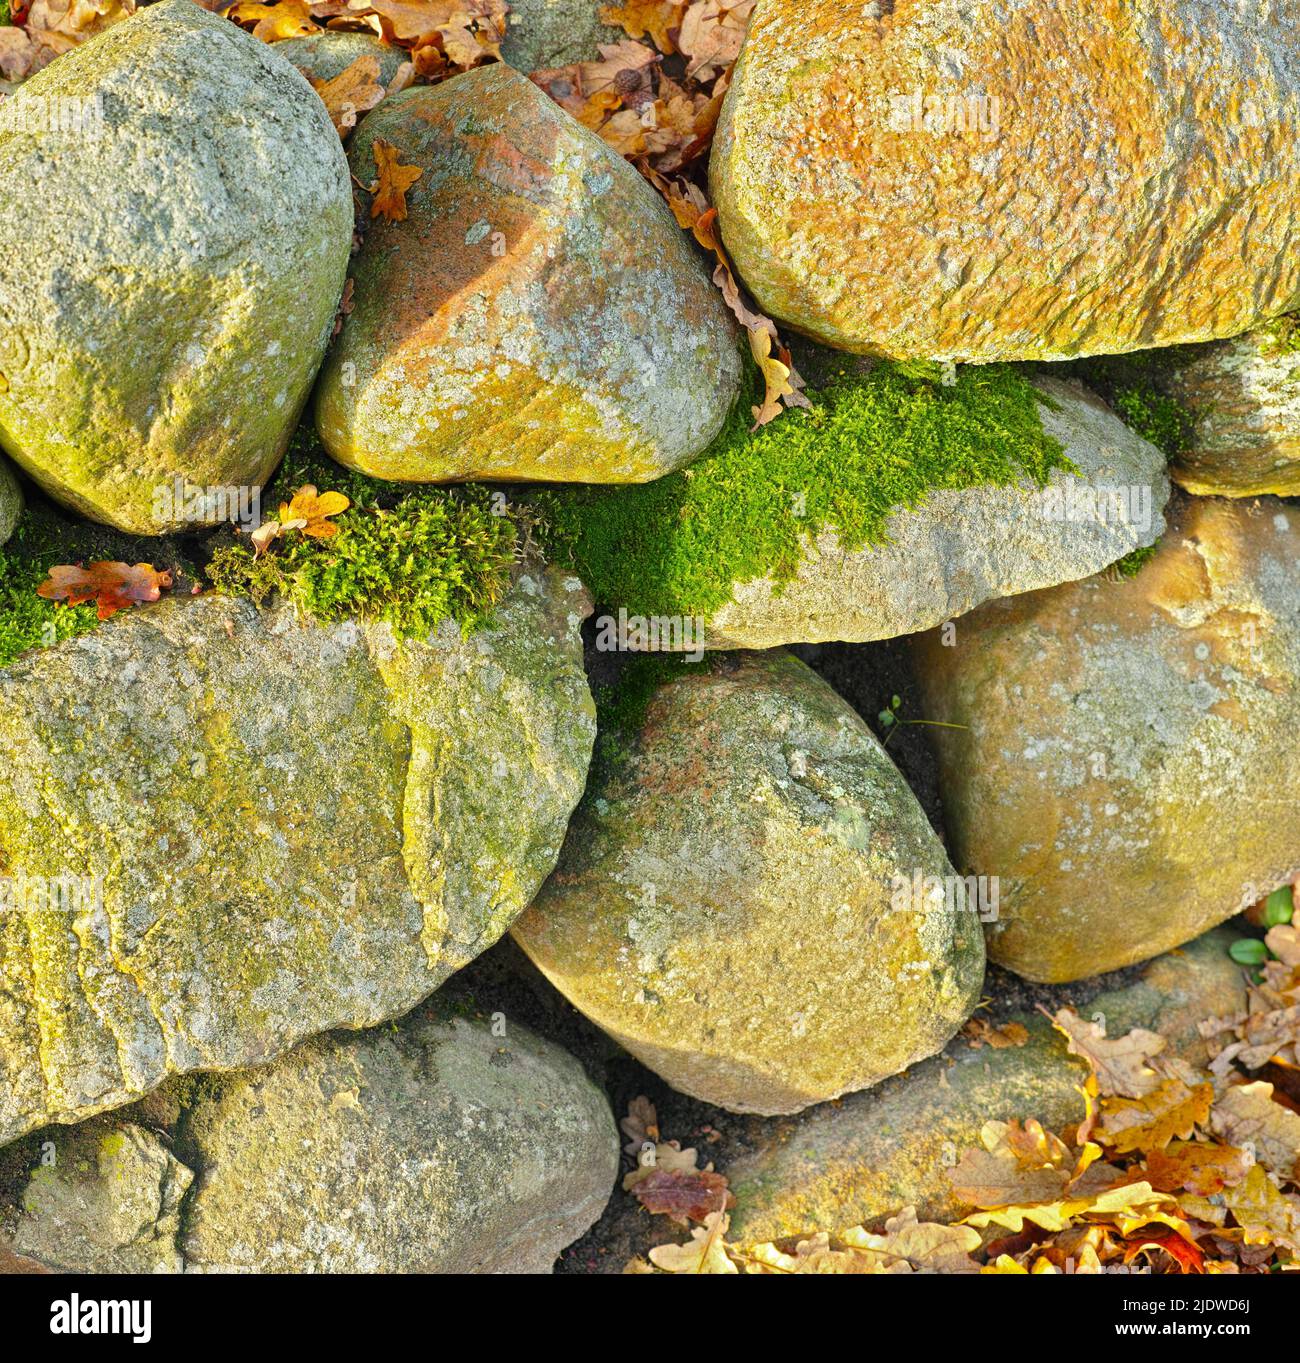 Gros plan d'un tas de roches couvertes de moisissure verte et de feuilles d'automne. Blocs de pierre entourés de feuilles séchées d'orange et de jaune à l'automne Banque D'Images